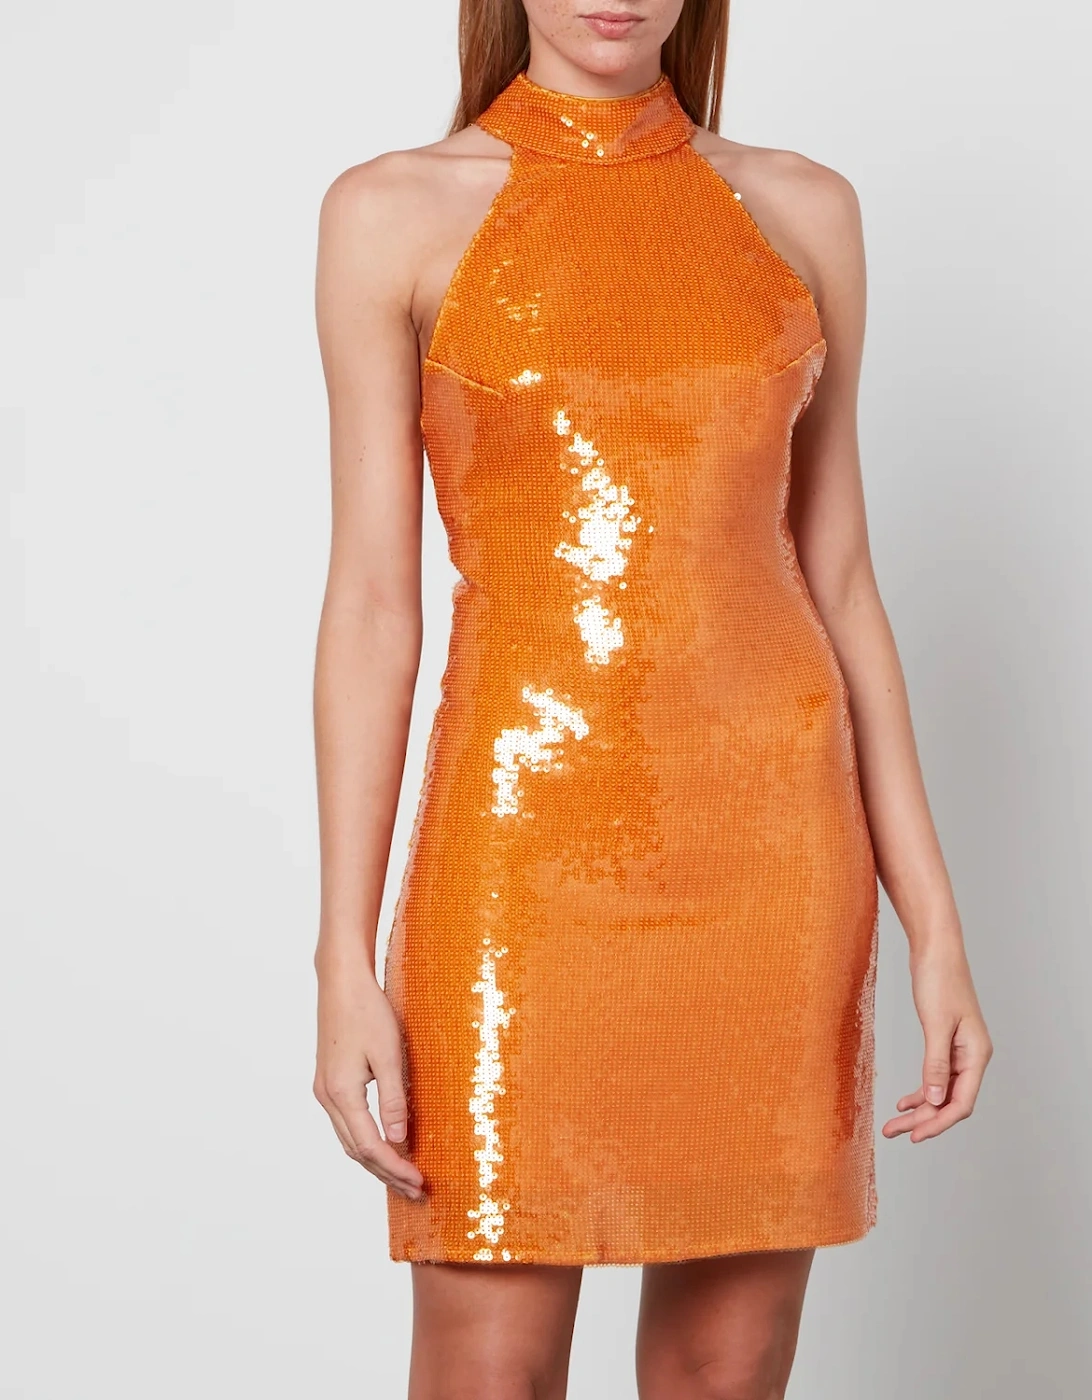 Women's Fuego Dress - Orange Sequin - - Home - Women's Fuego Dress - Orange Sequin, 2 of 1